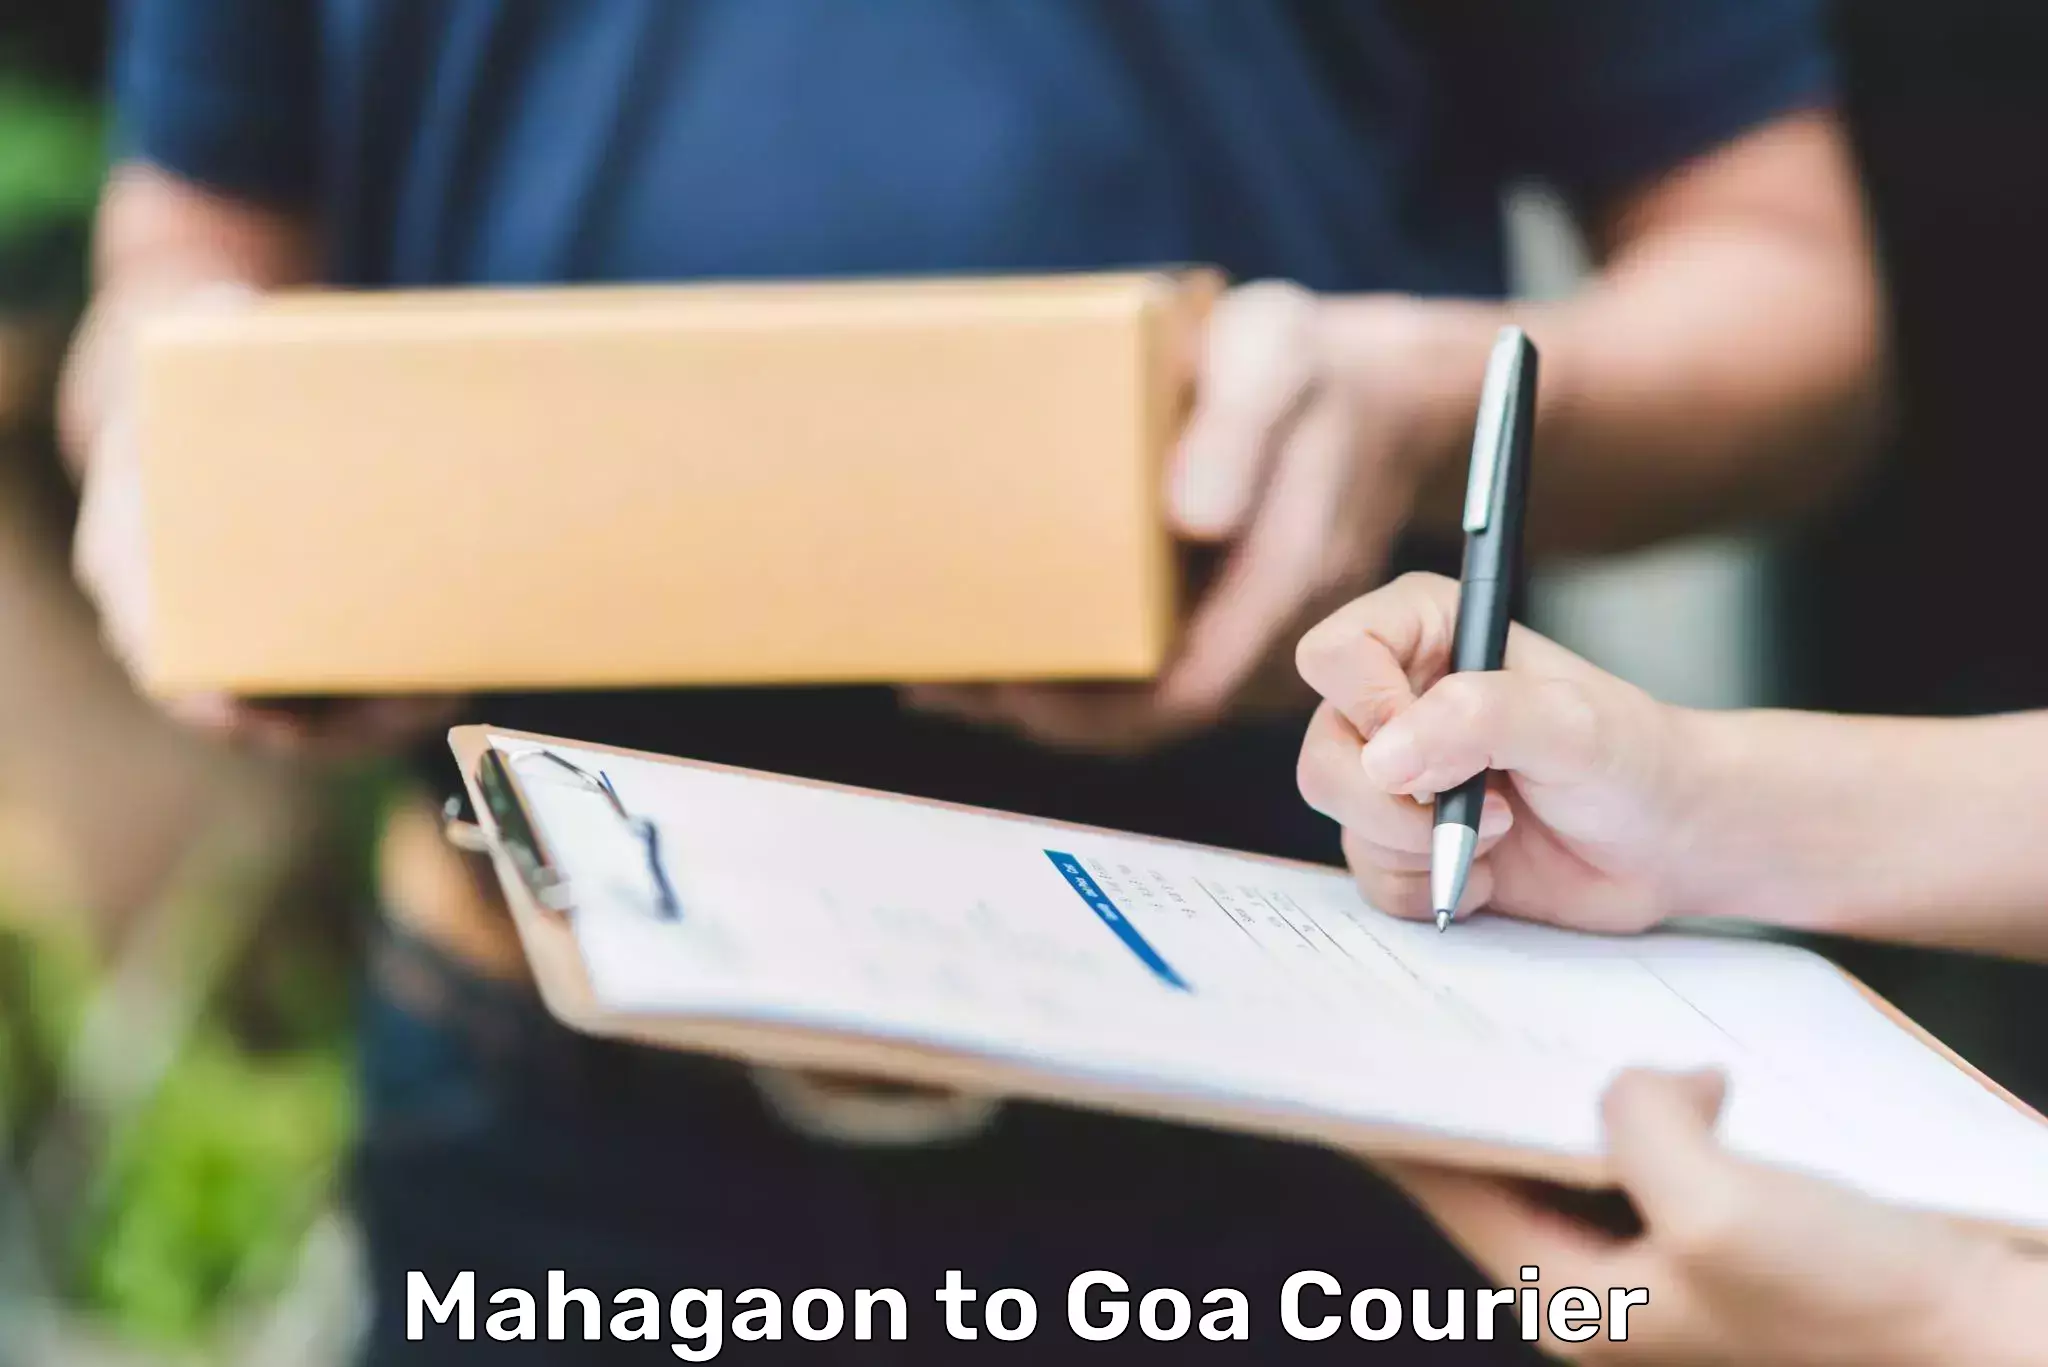 Courier service partnerships Mahagaon to Goa University